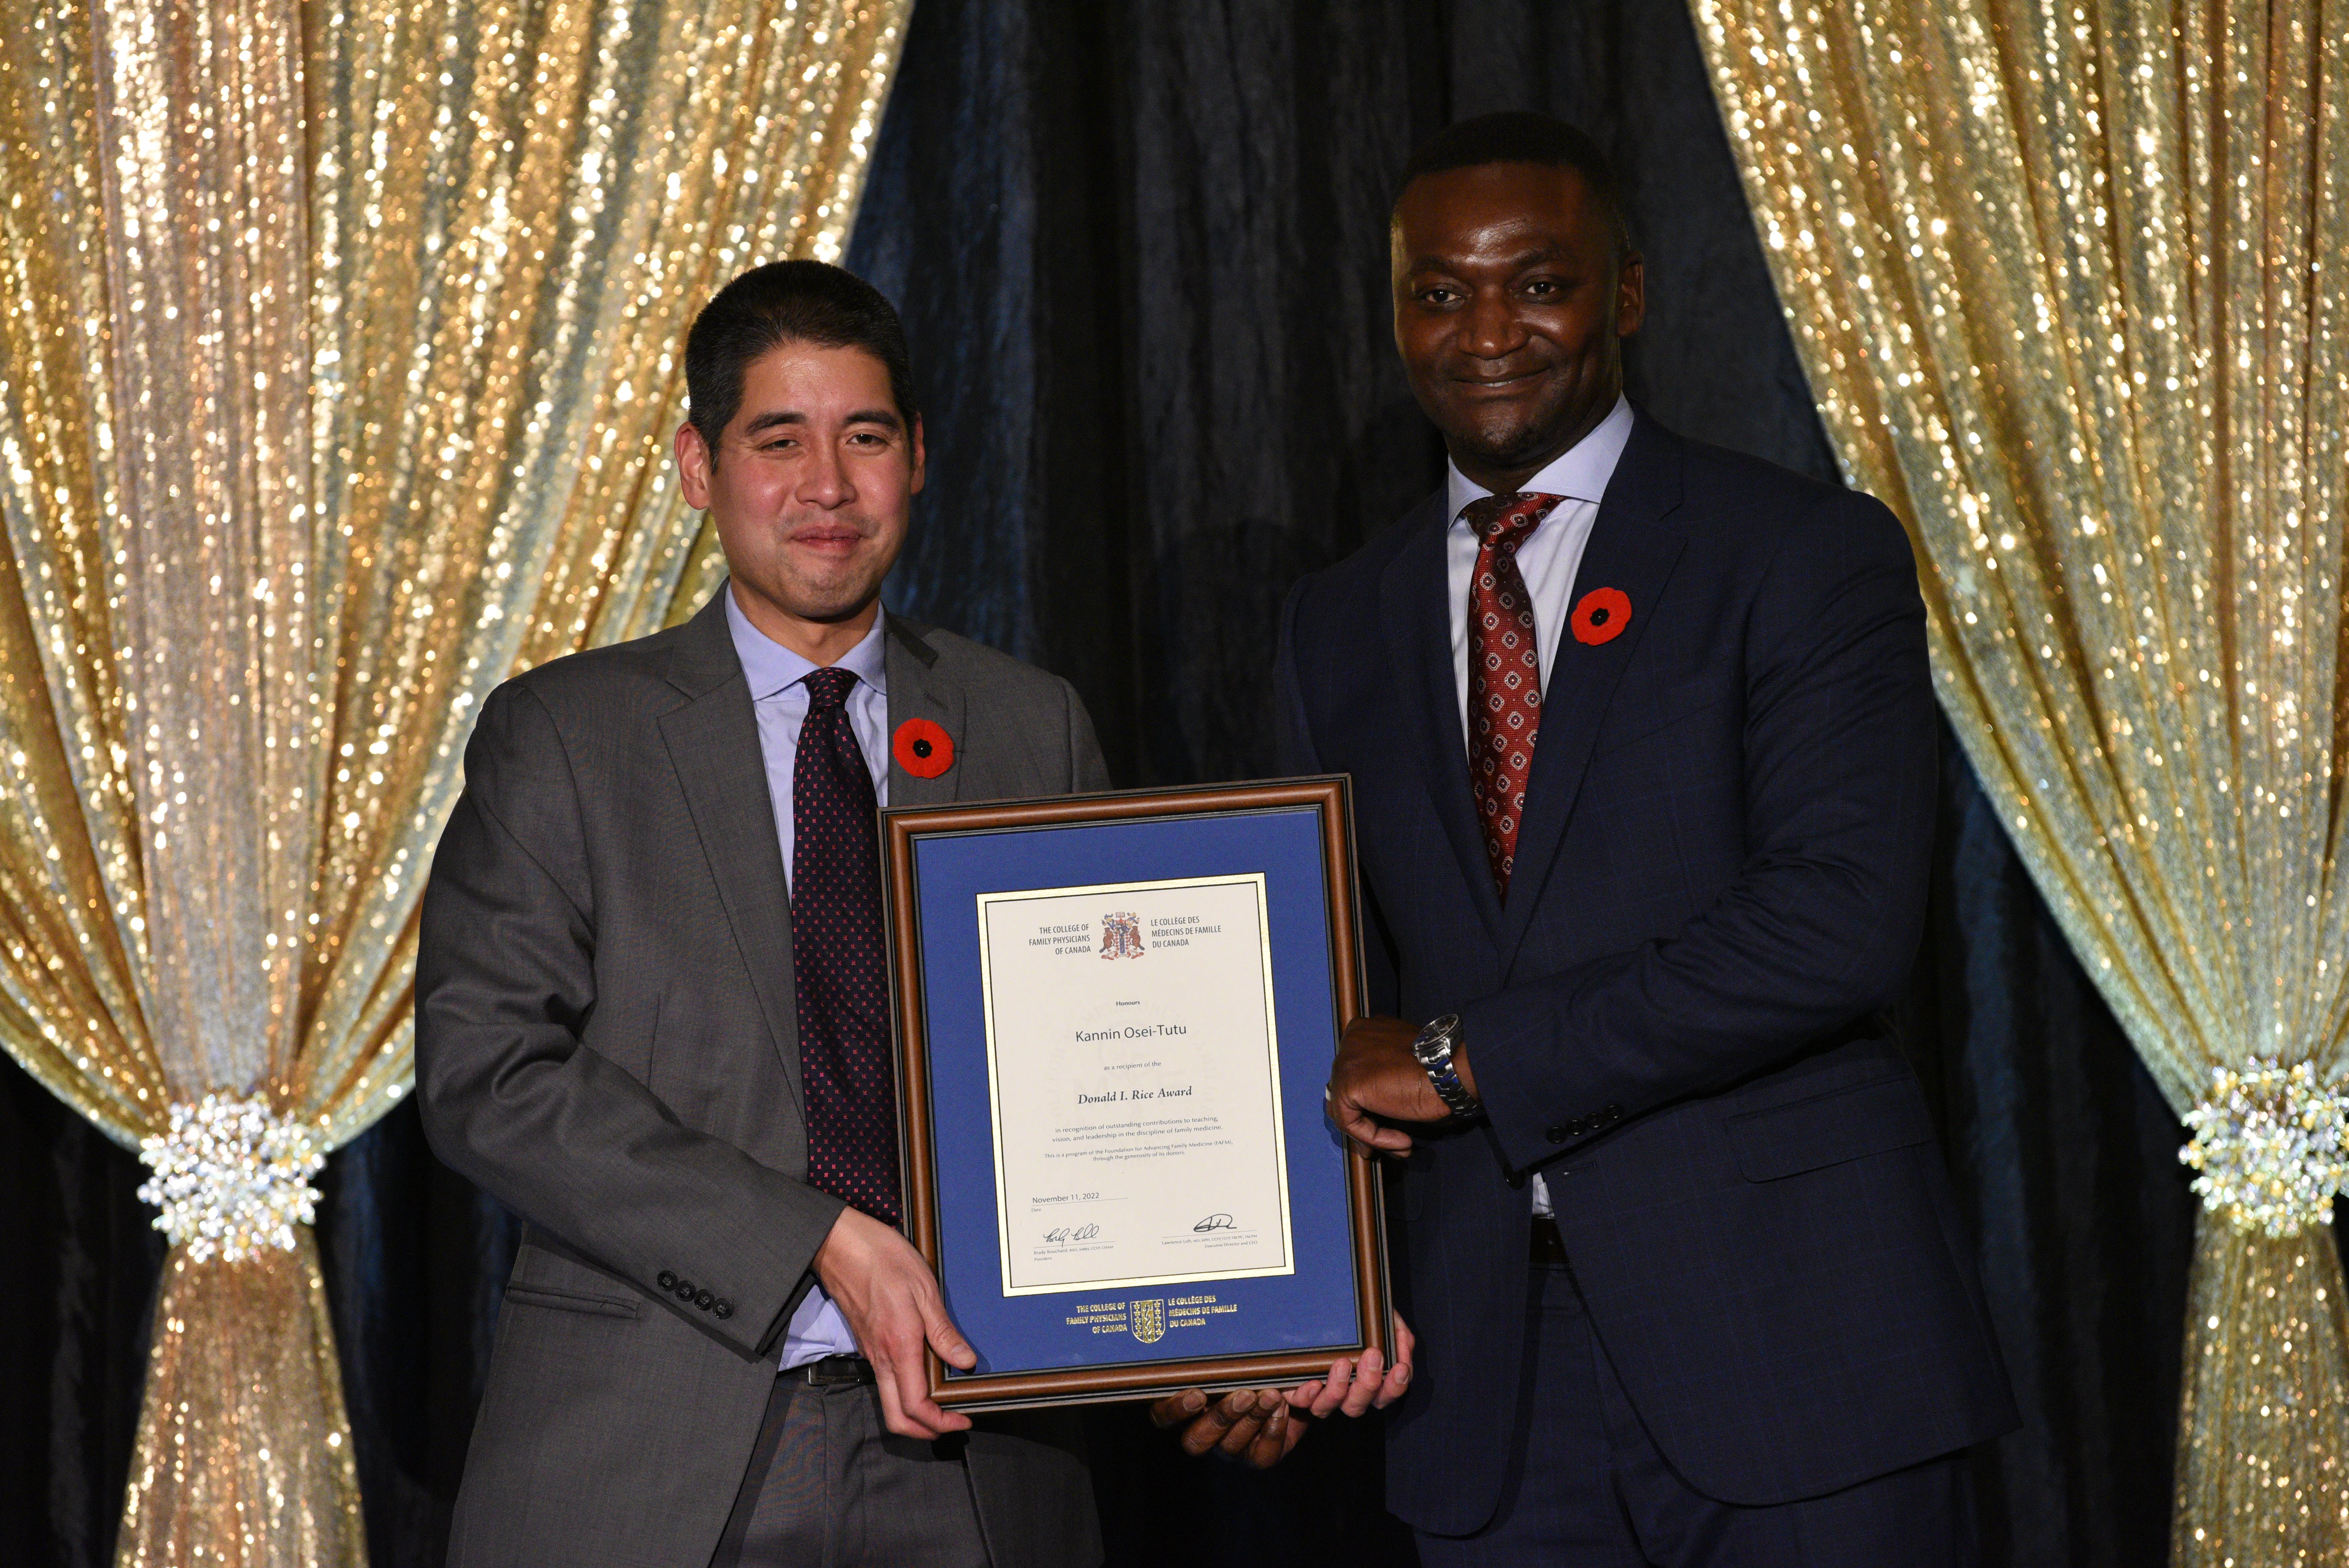 Dr. Kannin Osei-Tutu, the recipient of the Donald I. Rice Award